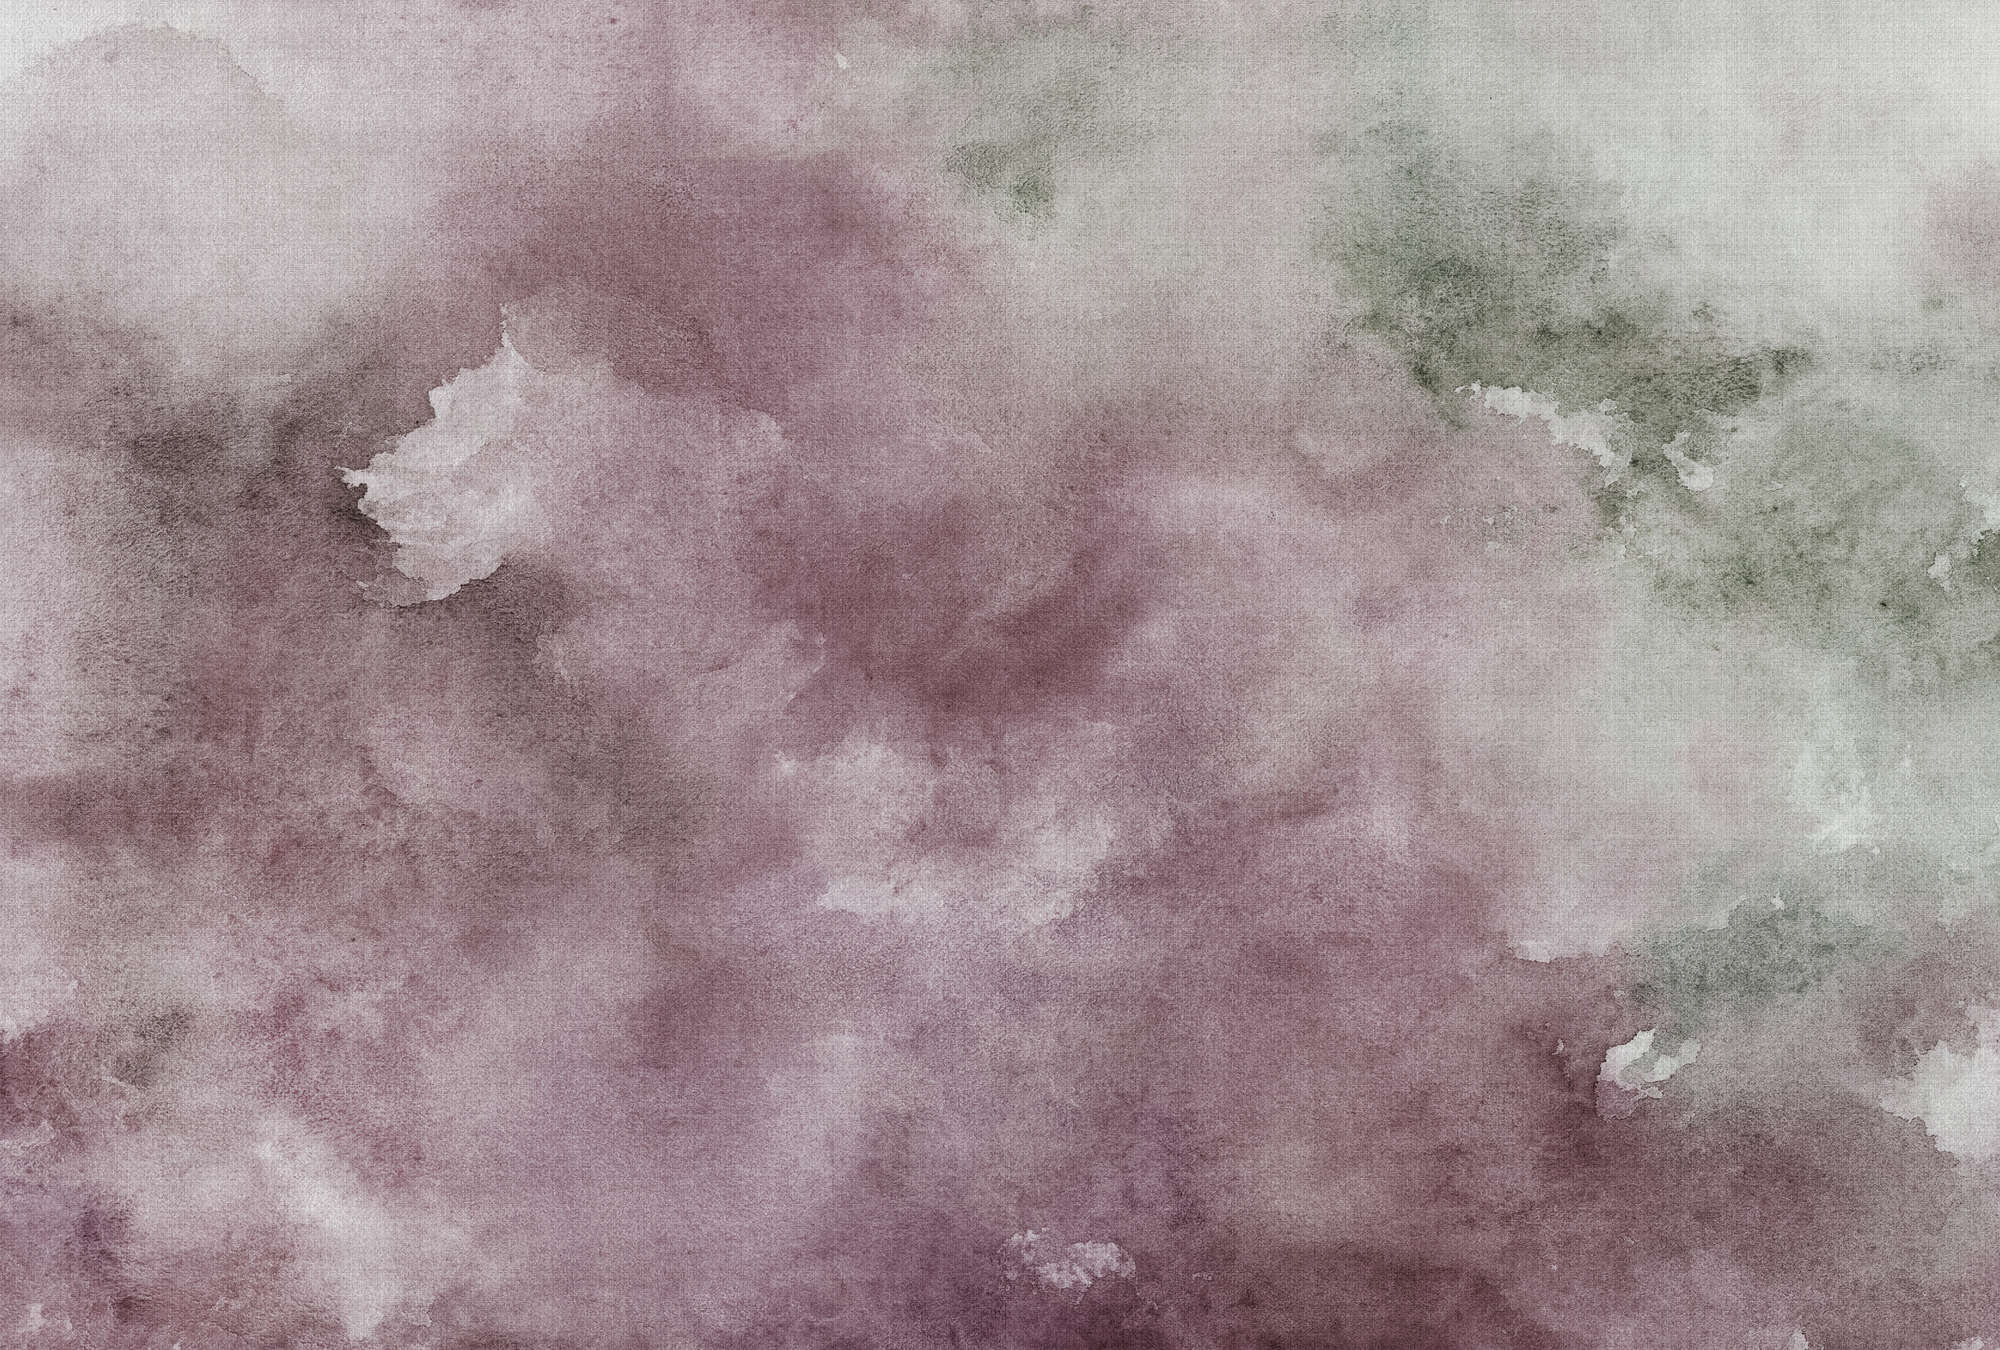             Acuarelas 2 - Papel Pintado Acuarelas Motivo Violeta - Textura Lino Natural - Beige, Marrón | Tejido sin tejer liso mate
        